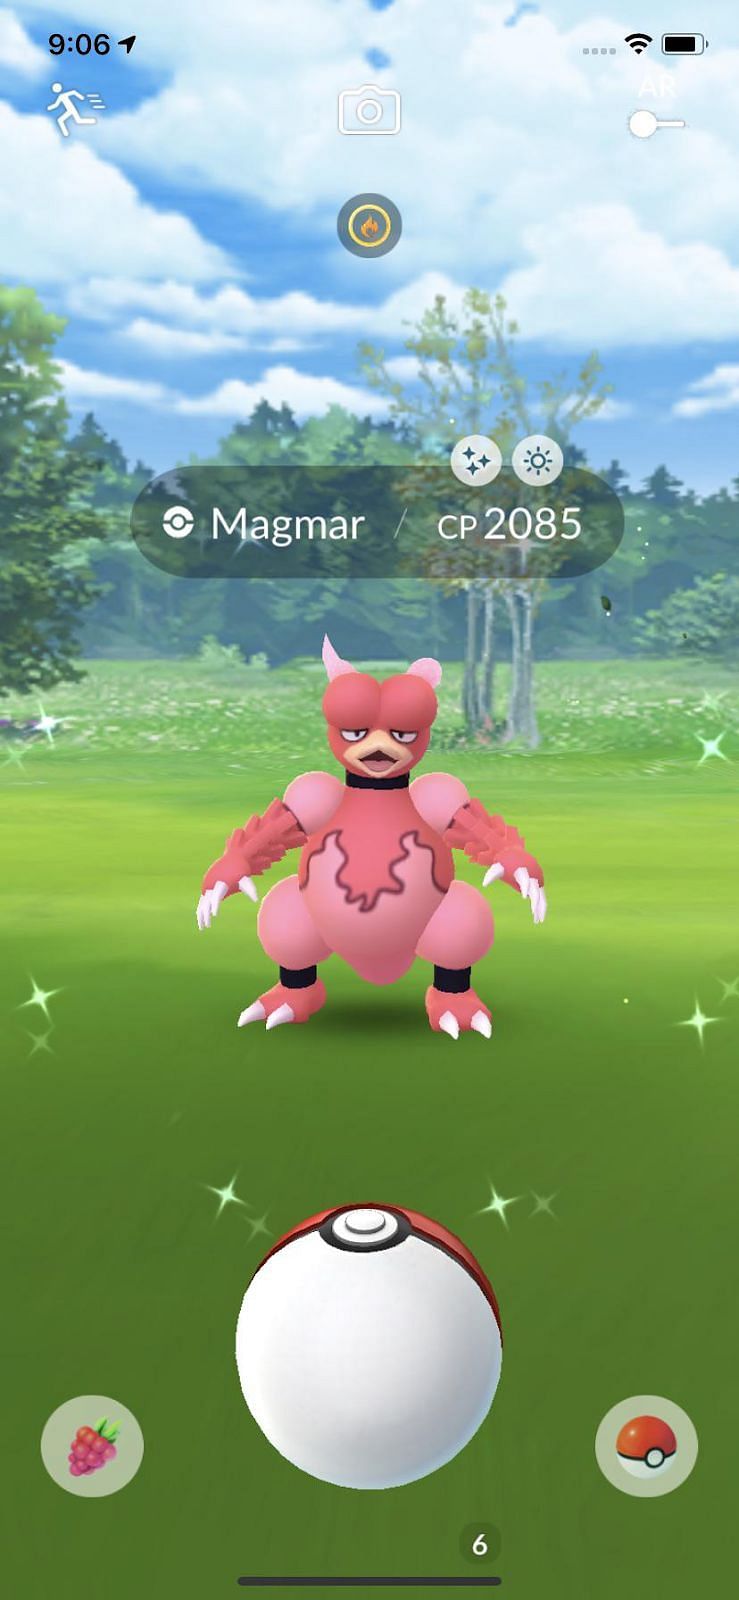 Magmar in Pokemon Go